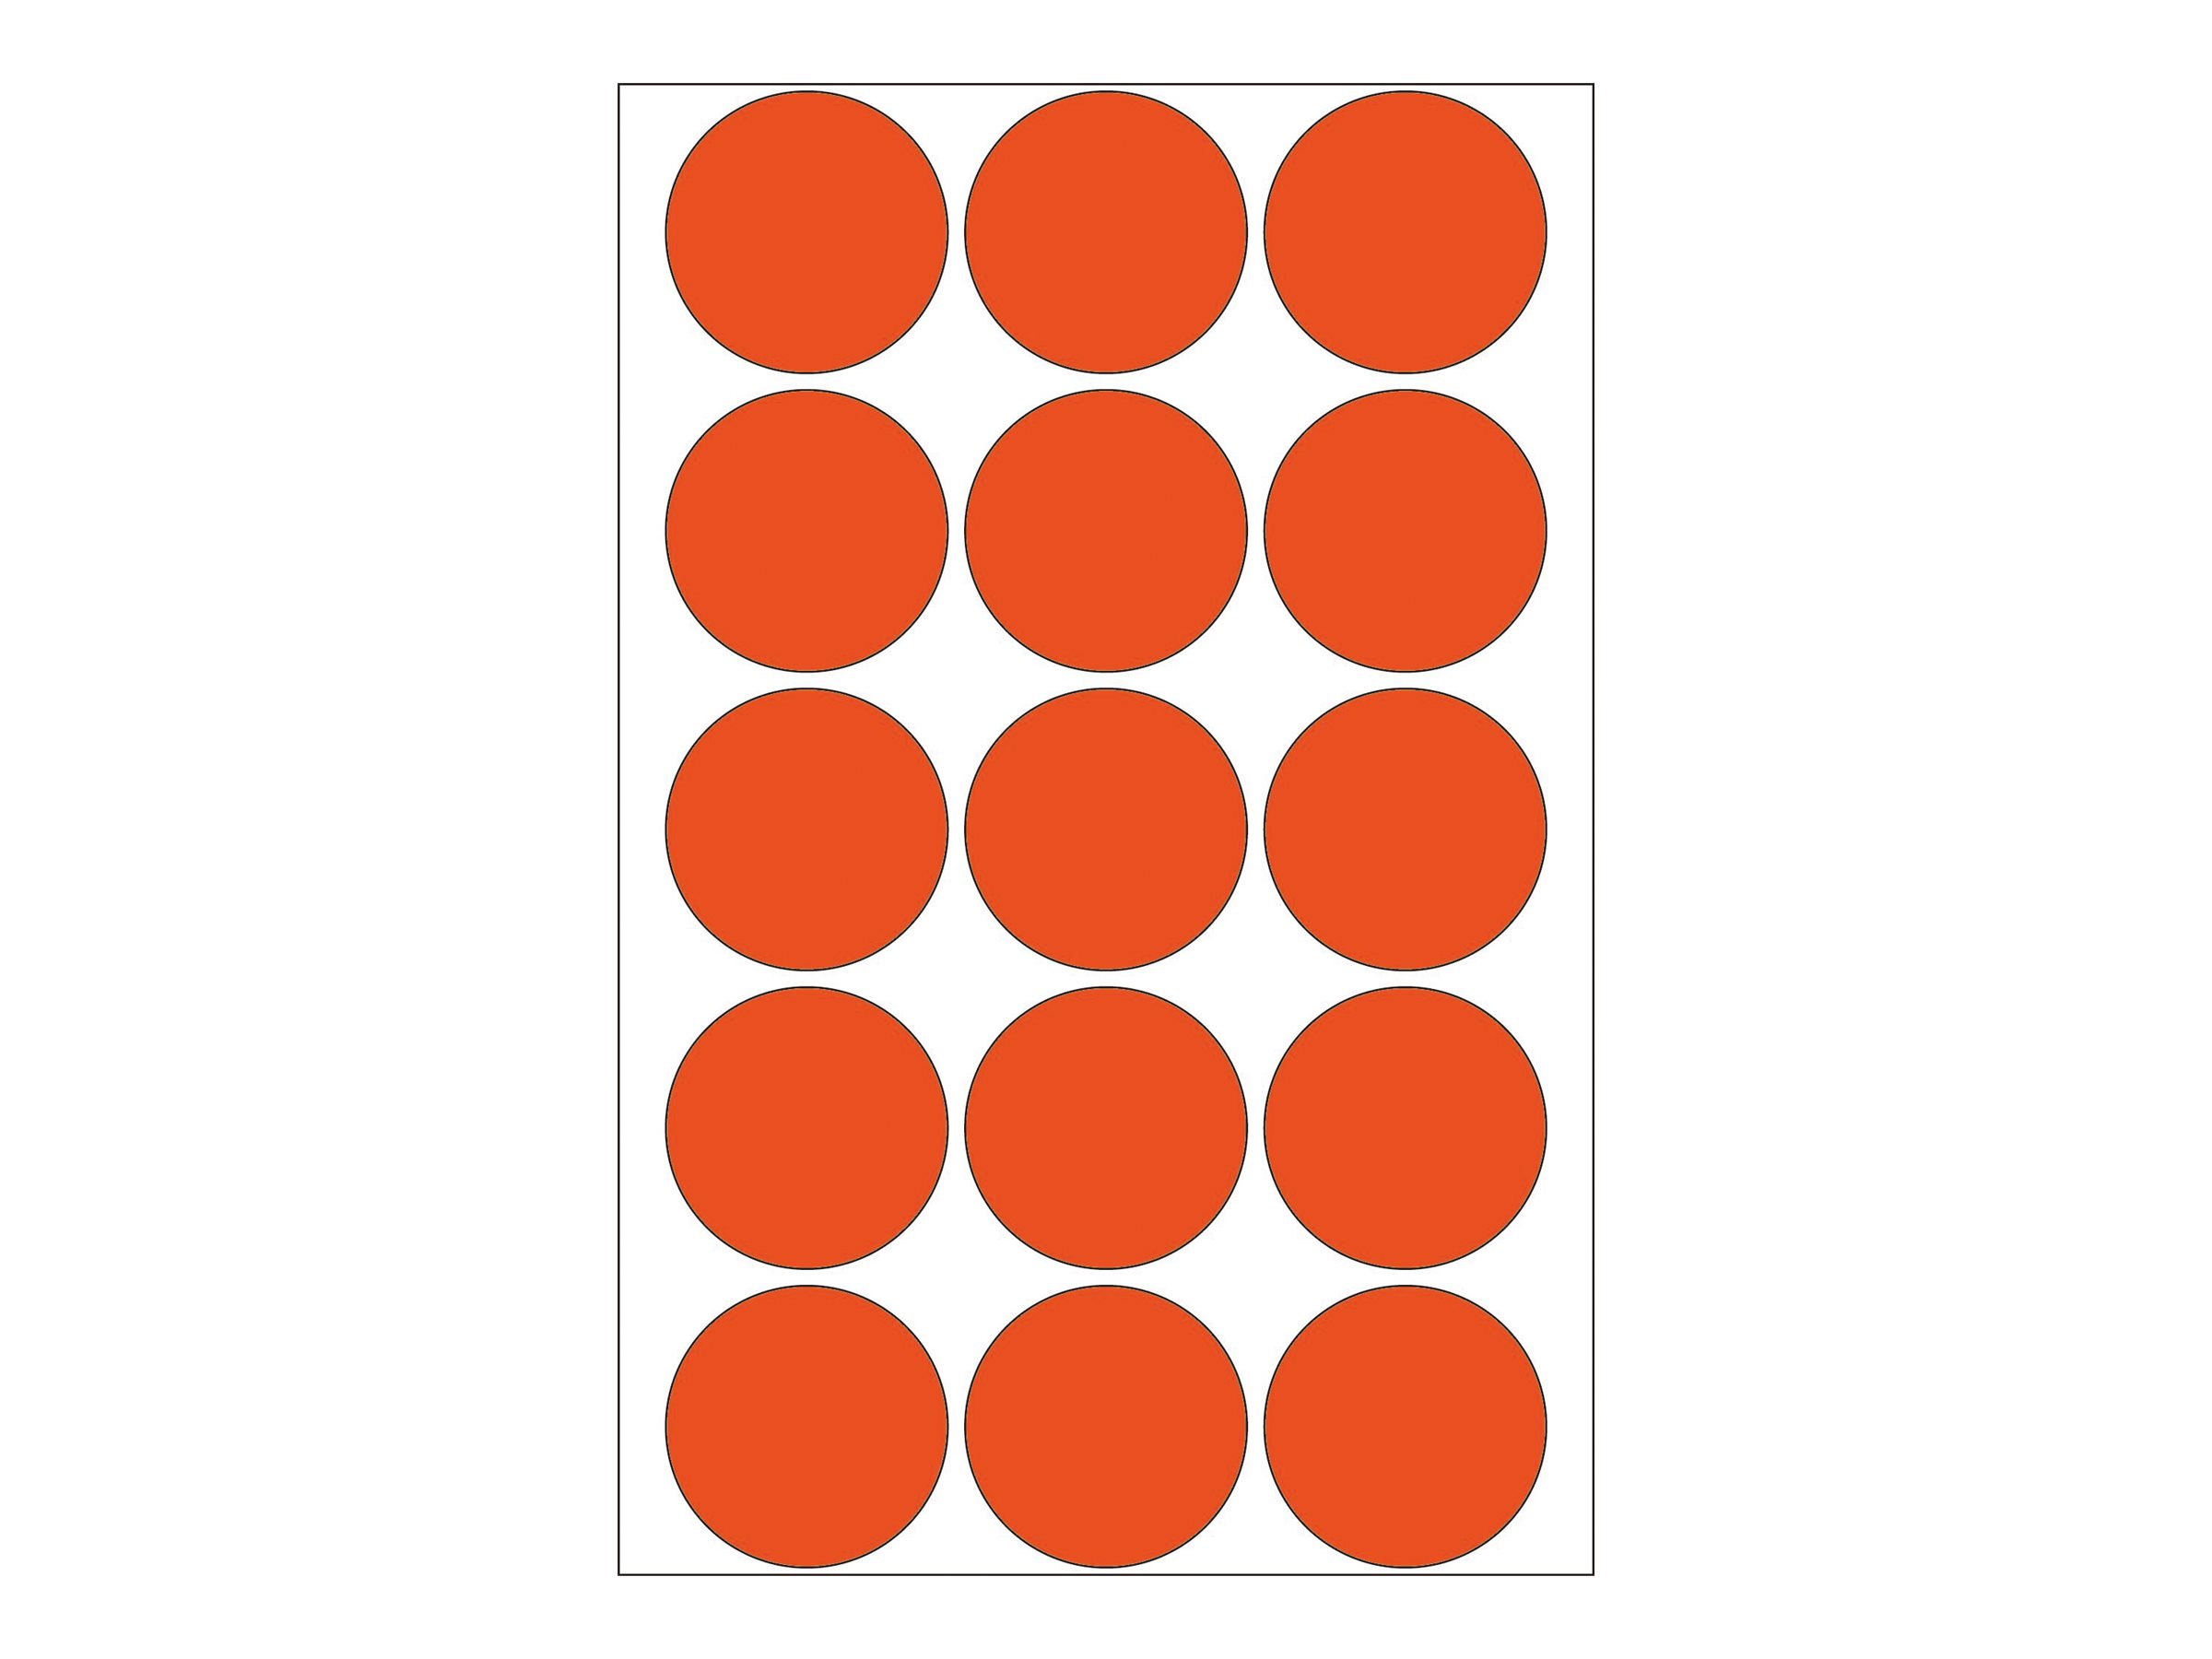 HERMA Papier - permanent selbstklebend - Rot - 32 mm rund 480 Etikett(en) (32 Bogen x 15)